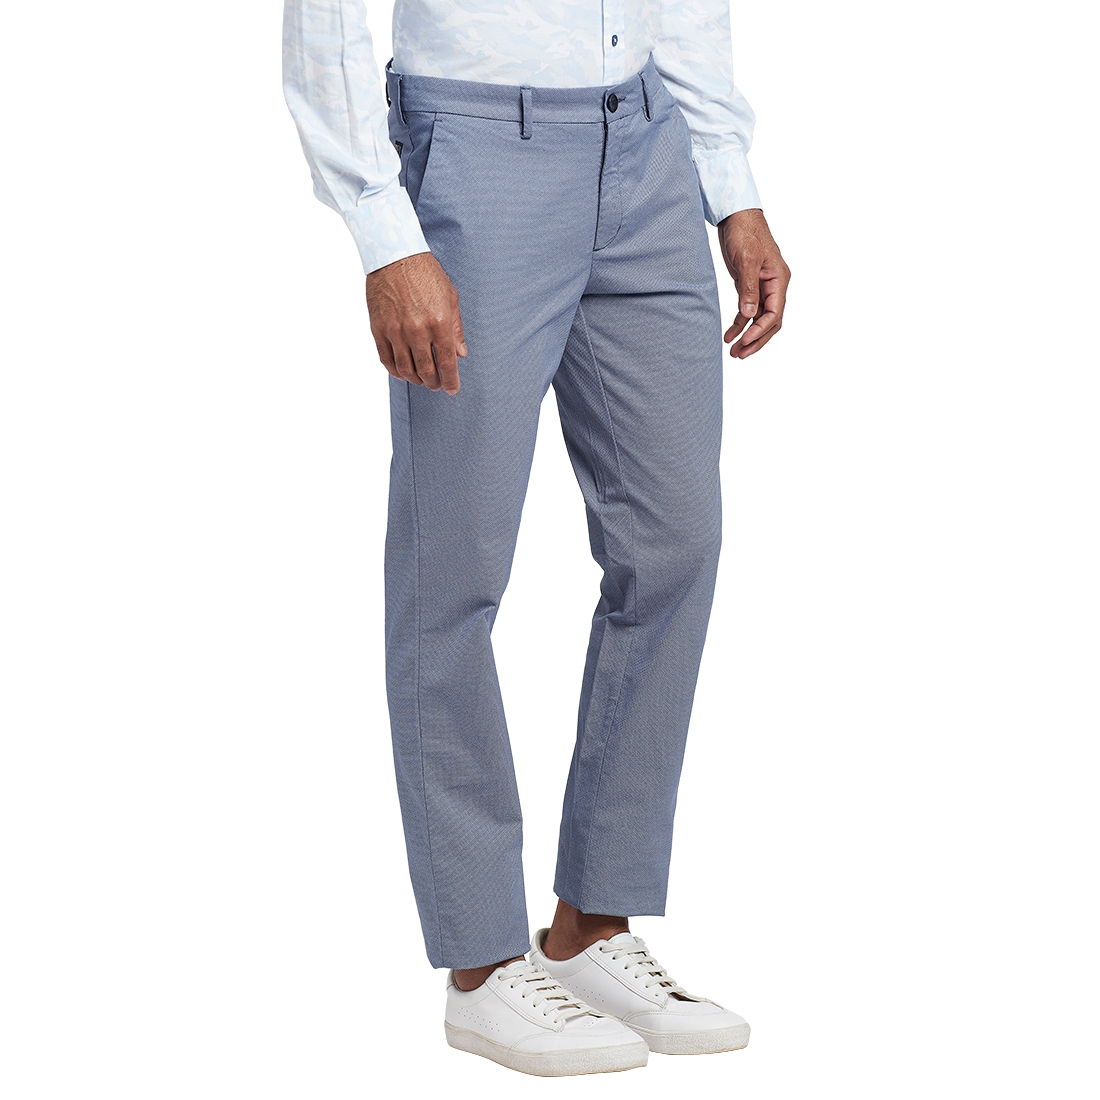 ColorPlus Blue Trouser